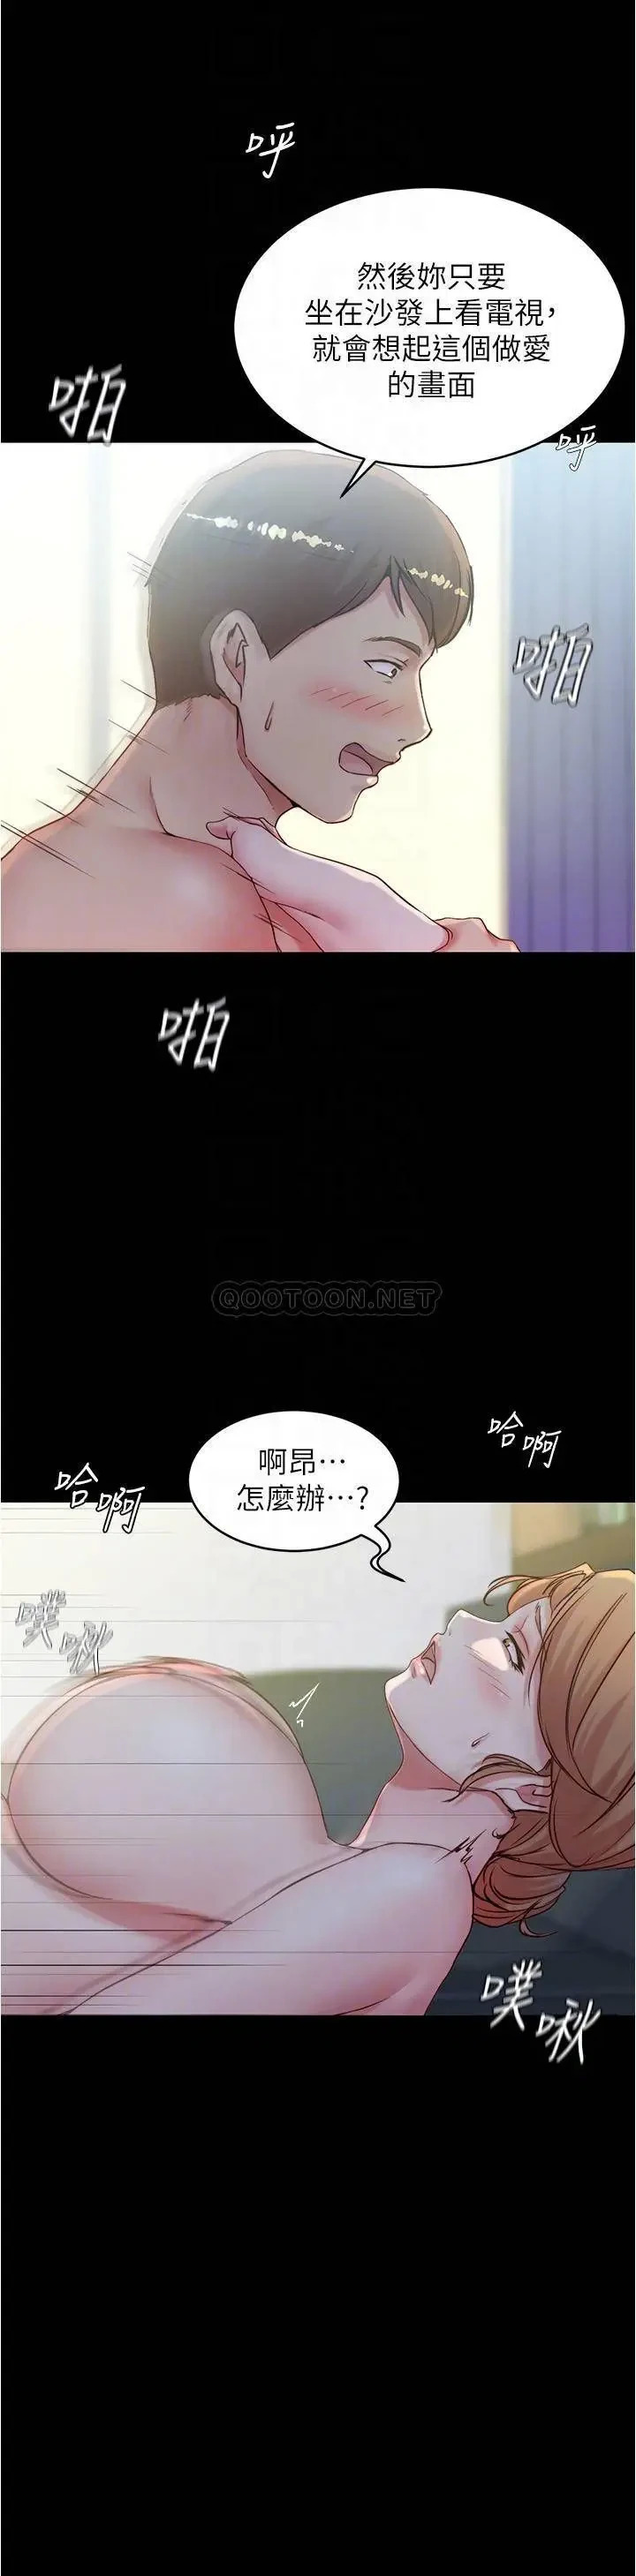 《小裤裤笔记》漫画 第37话 开始跟张穗桦同居